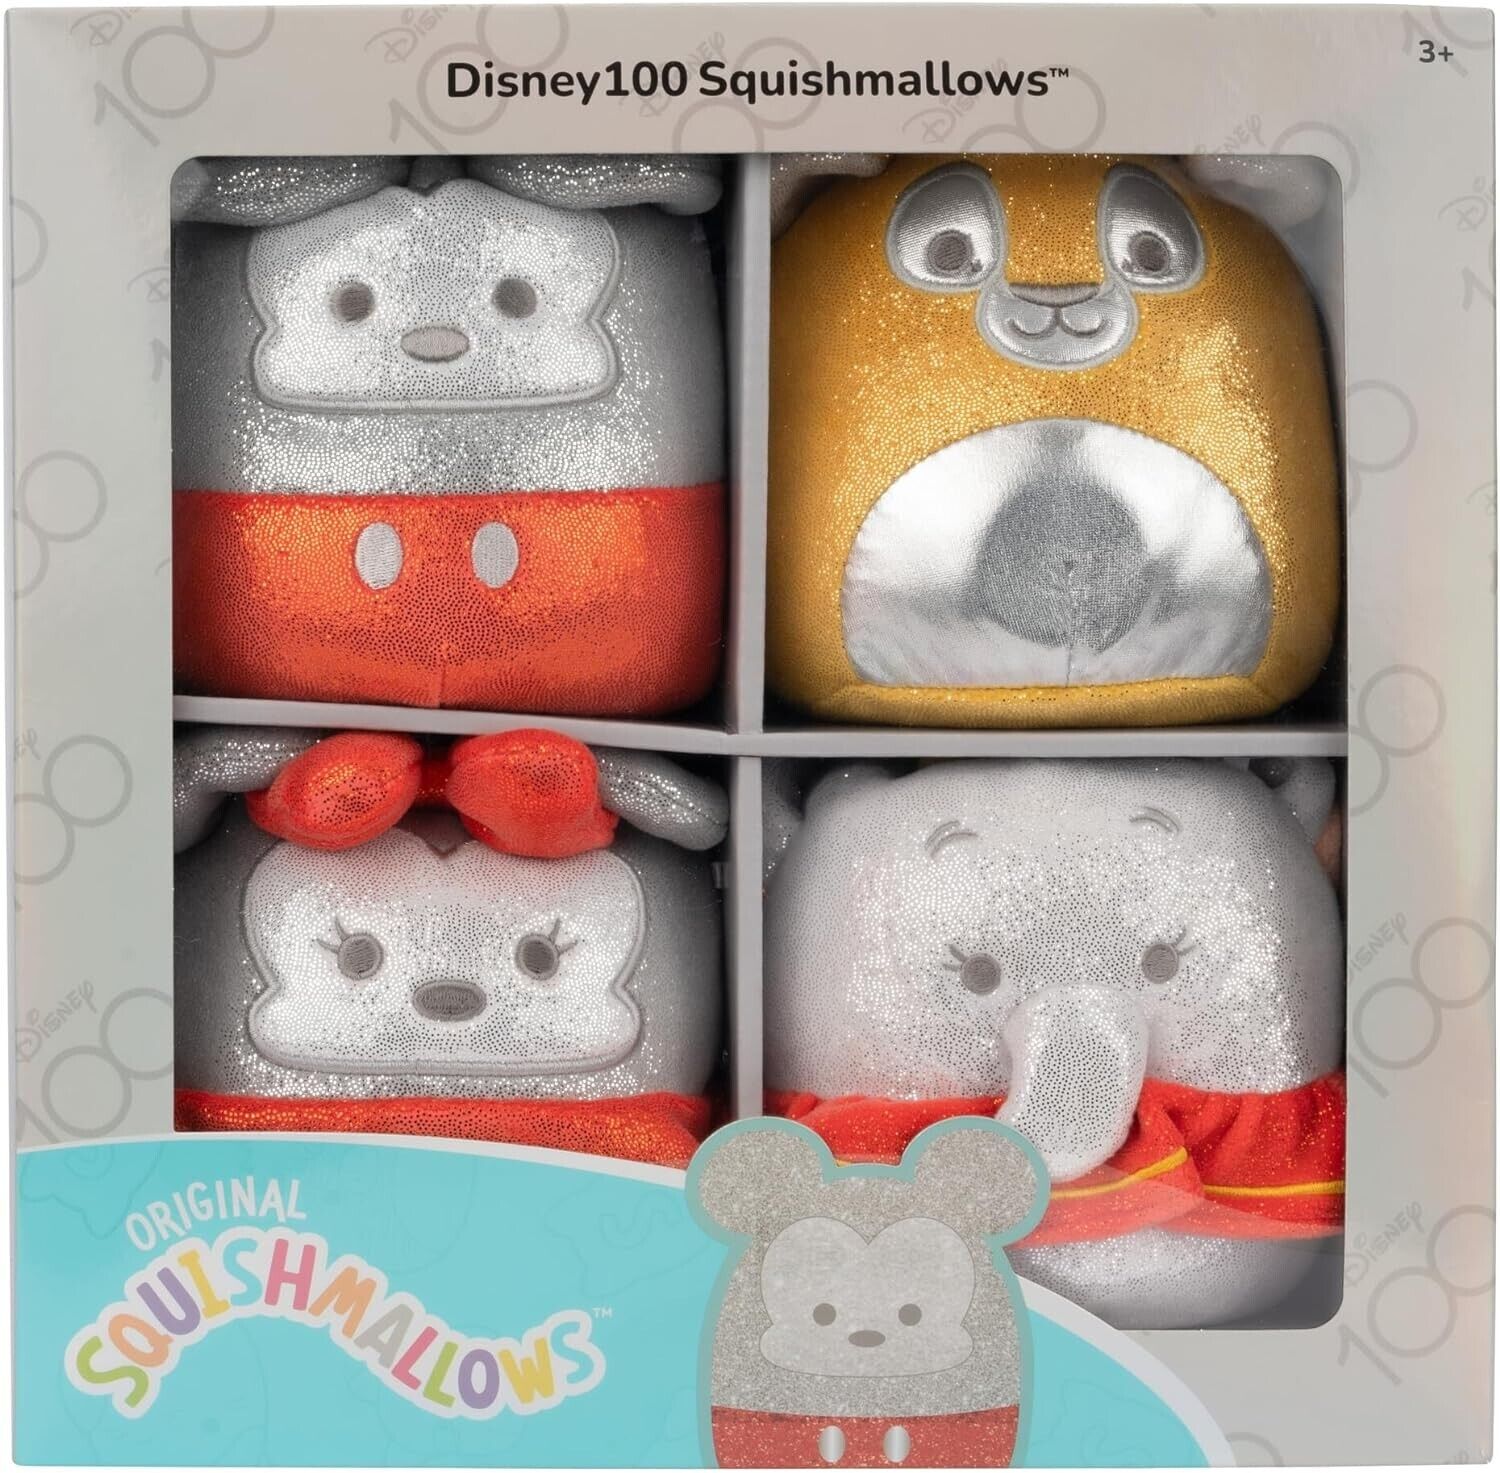 Squishmallows Disney 100 4 Pack, Winnie, Tinkerbell, Dumbo, Simba Brand NEW!!